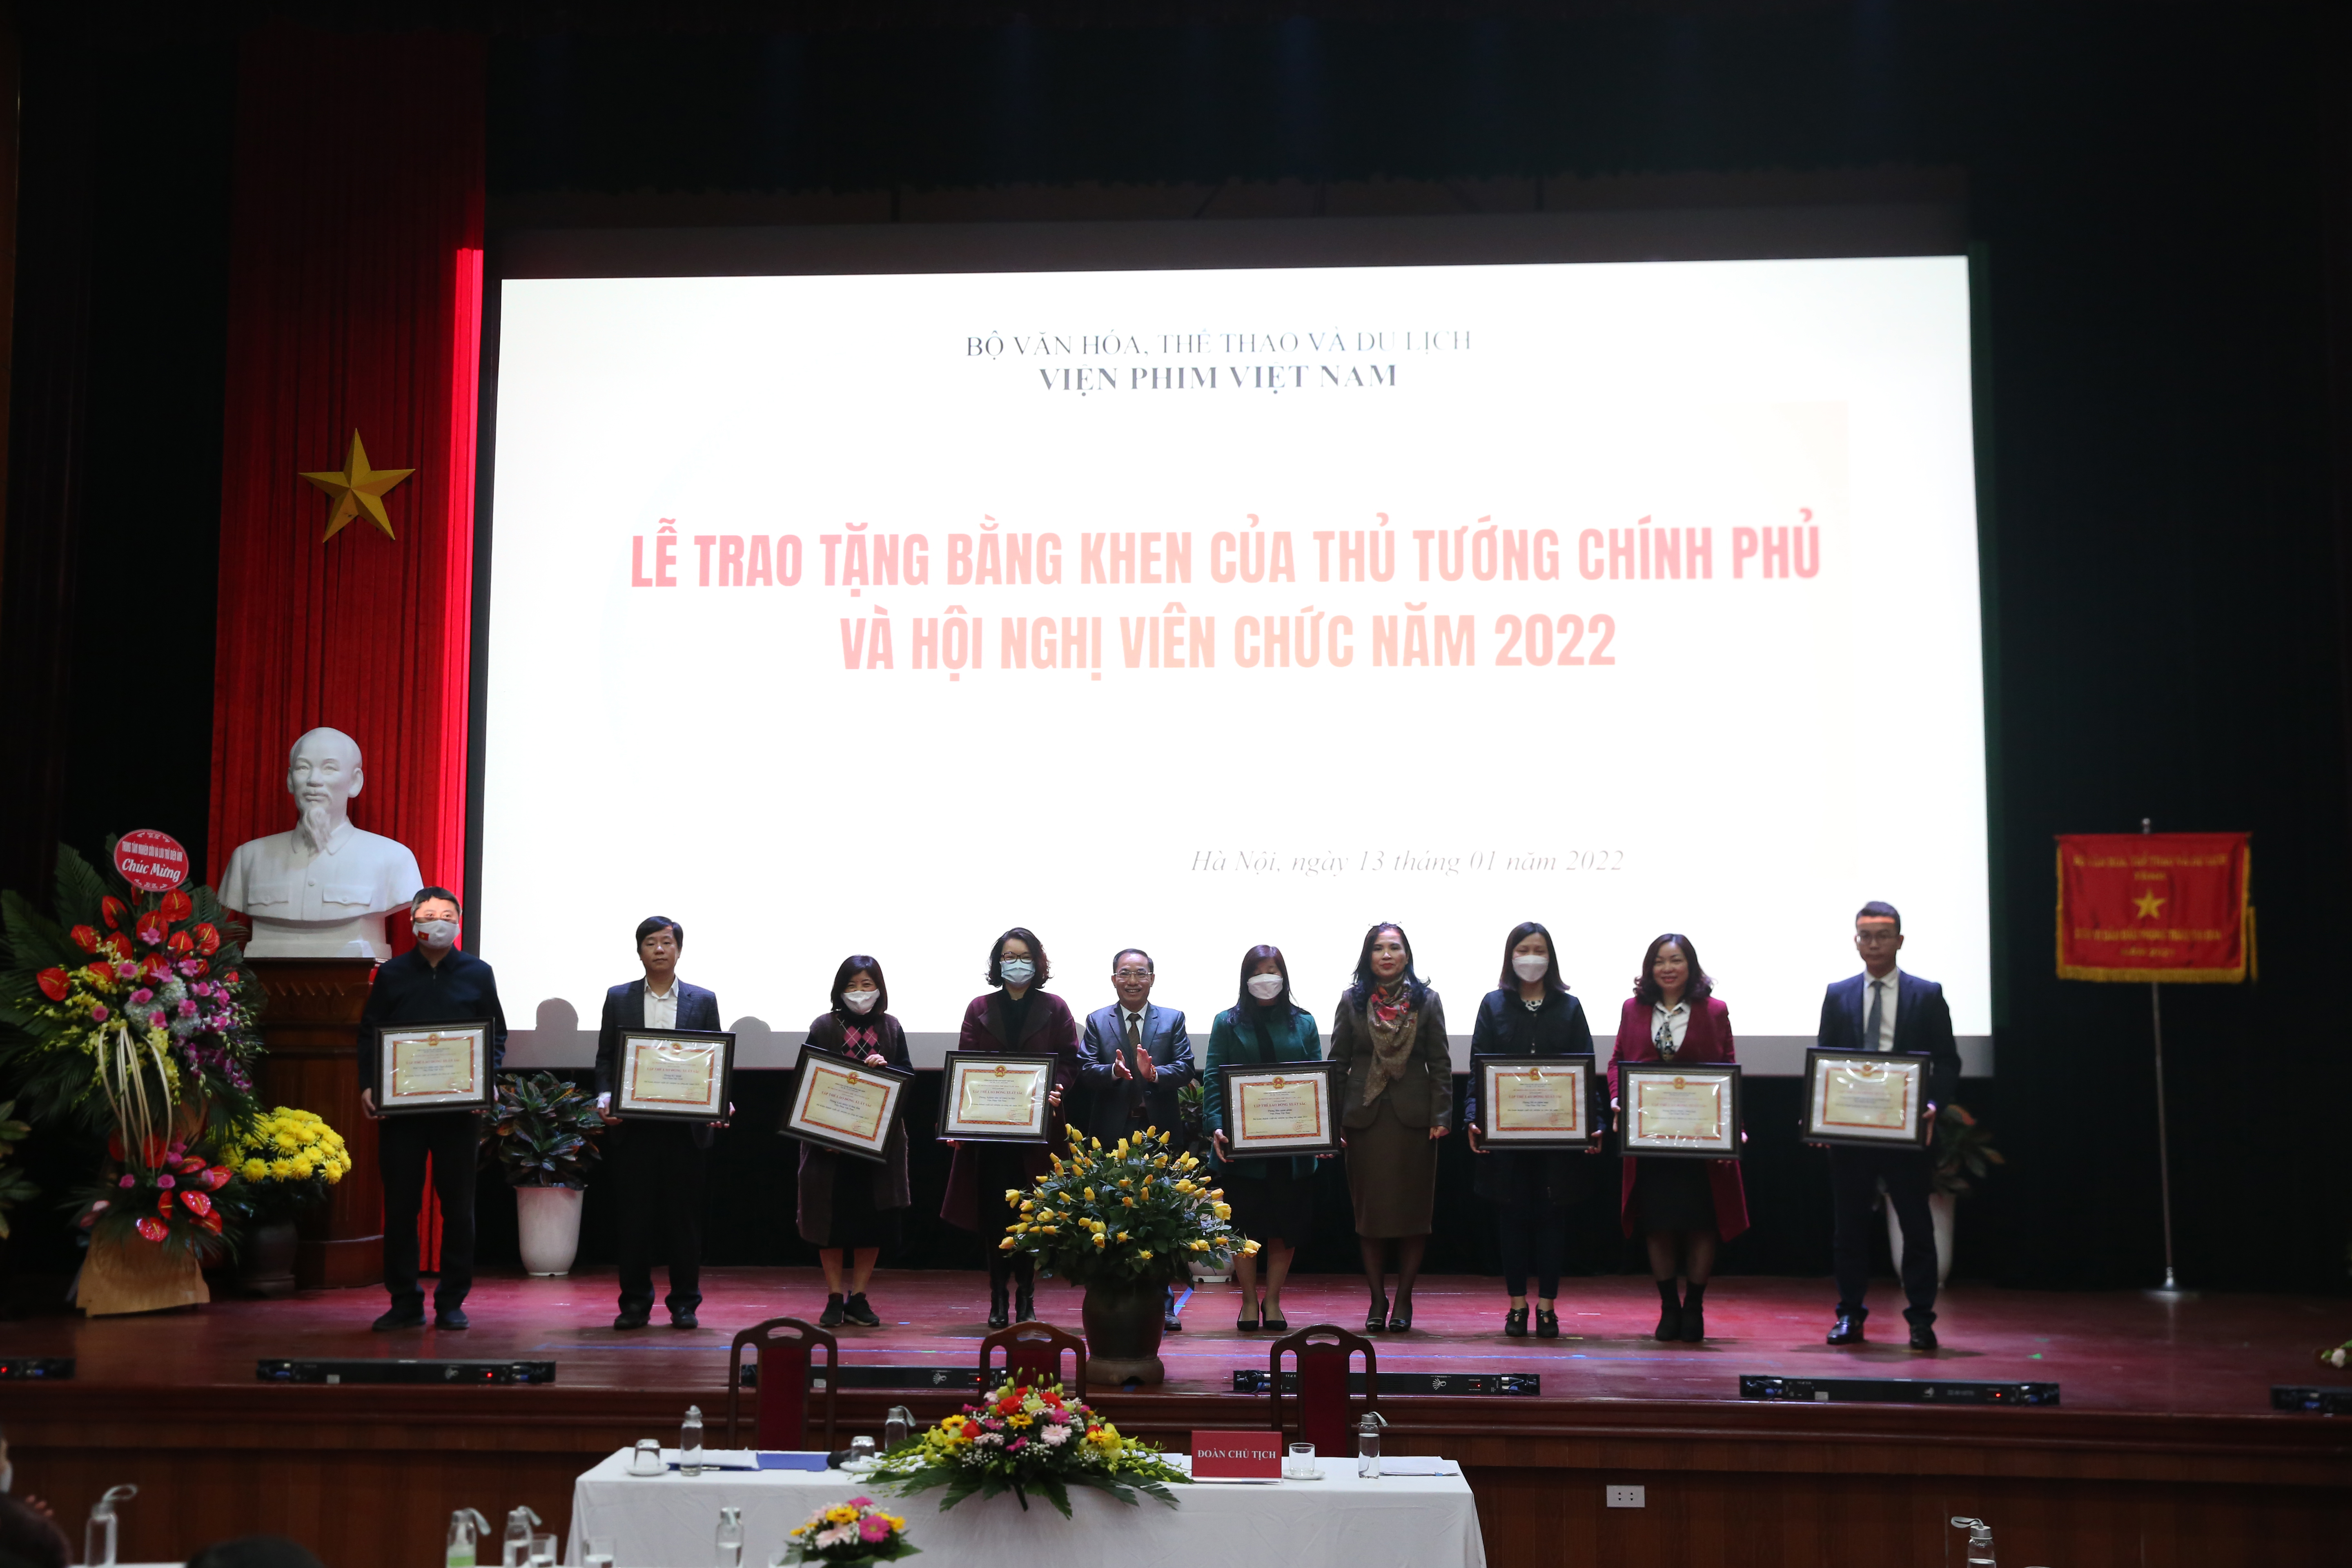 Đại hội Đoàn Cơ sở Viện Phim Việt Nam nhiệm kỳ 2022 - 2027